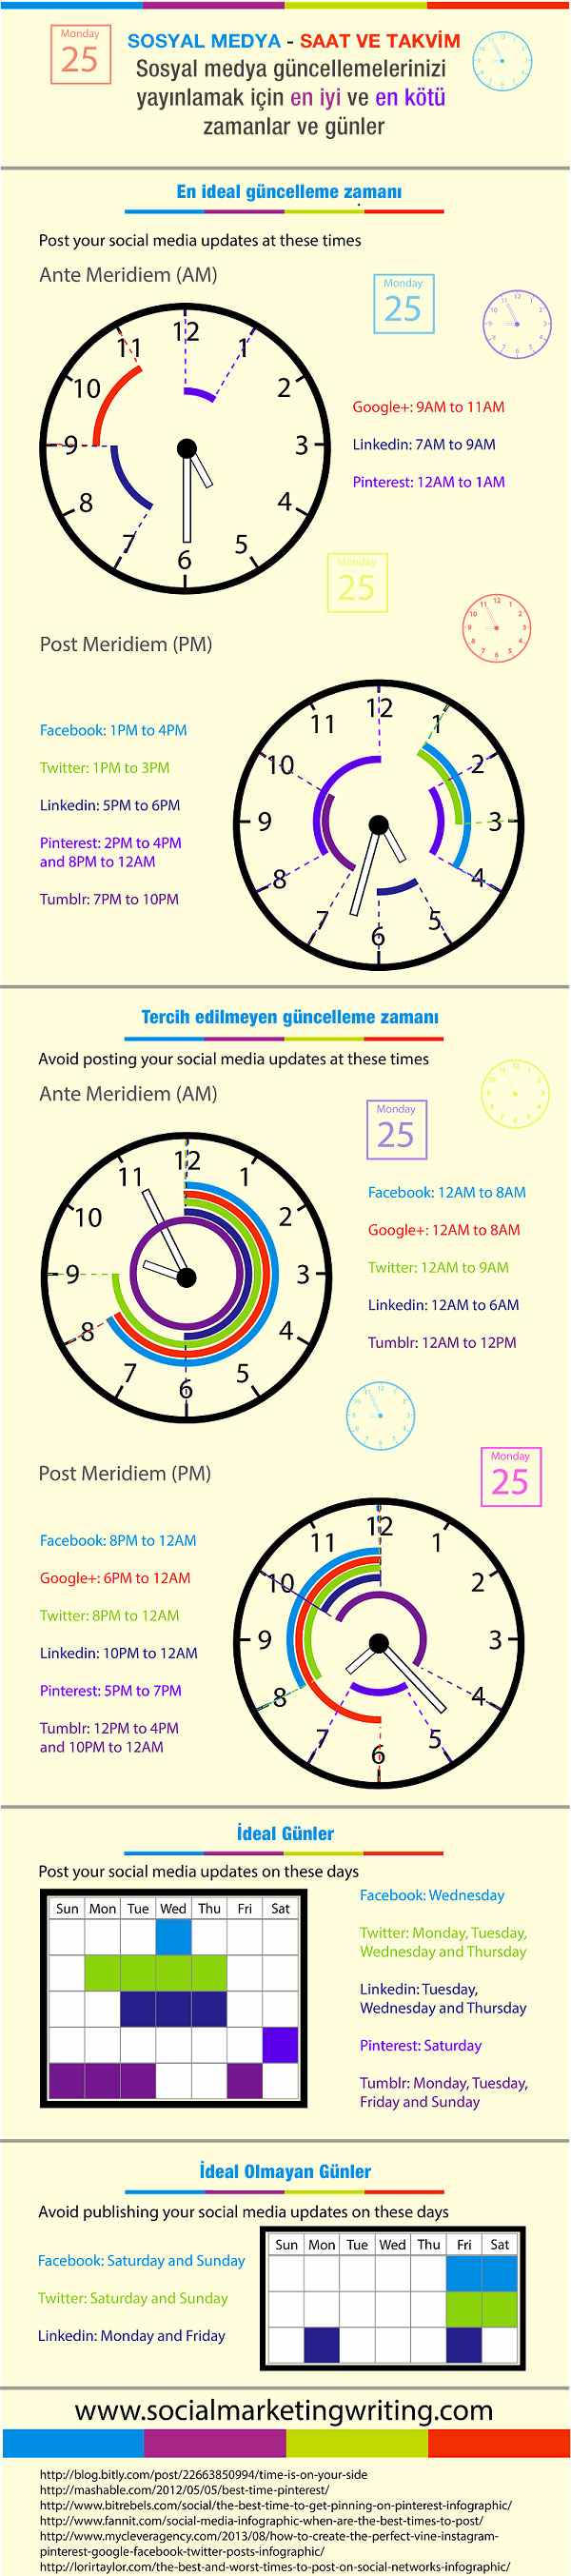 Sosyal medyada paylaşım için en uygun saatler ve günler 